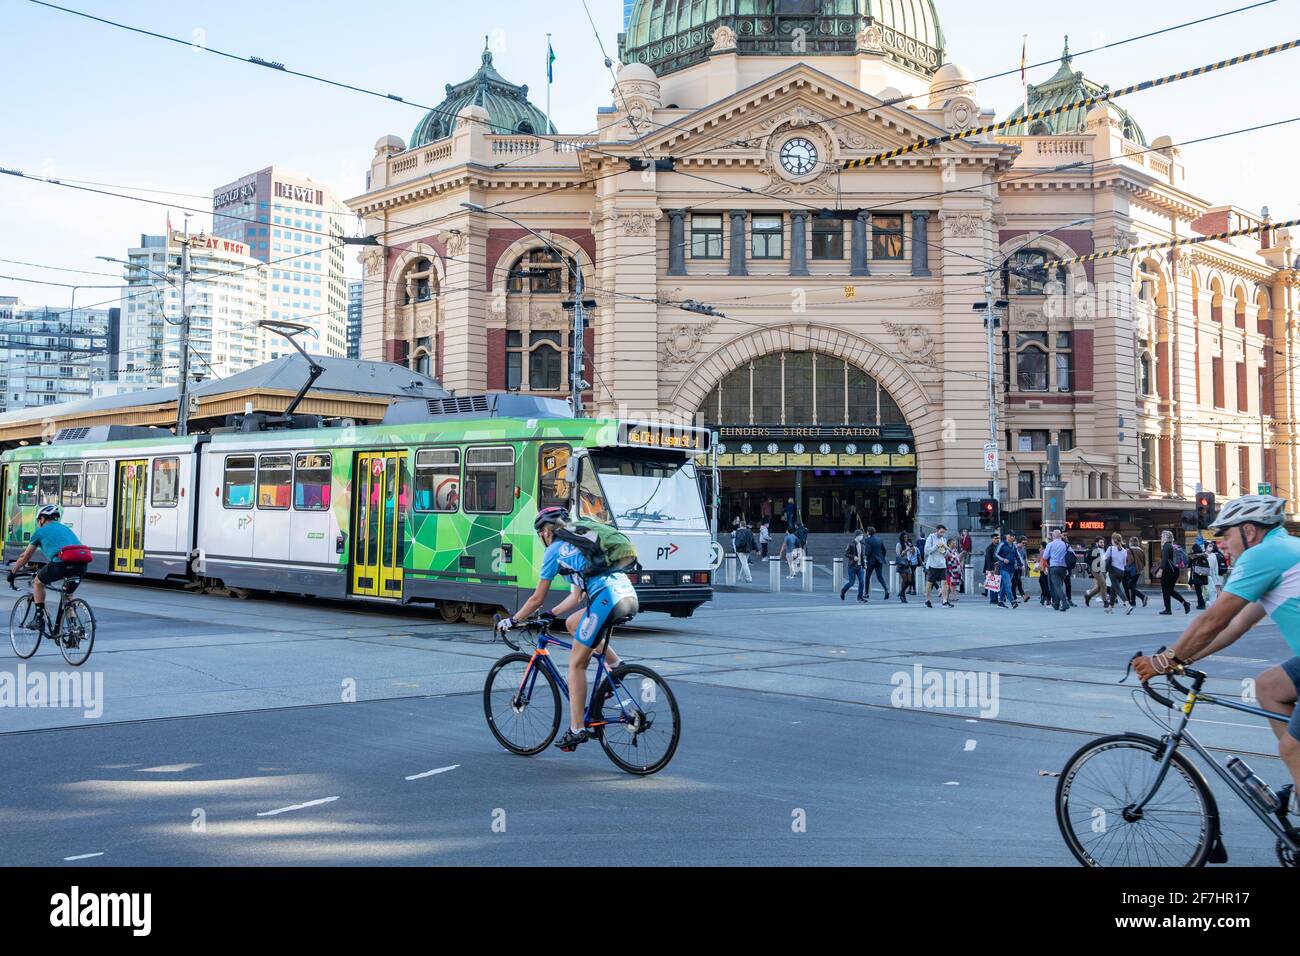 Centro citta' di Melbourne, stazione ferroviaria e tram di Spender Street, ciclisti in bicicletta, centro citta' di Melbourne, Australia Foto Stock